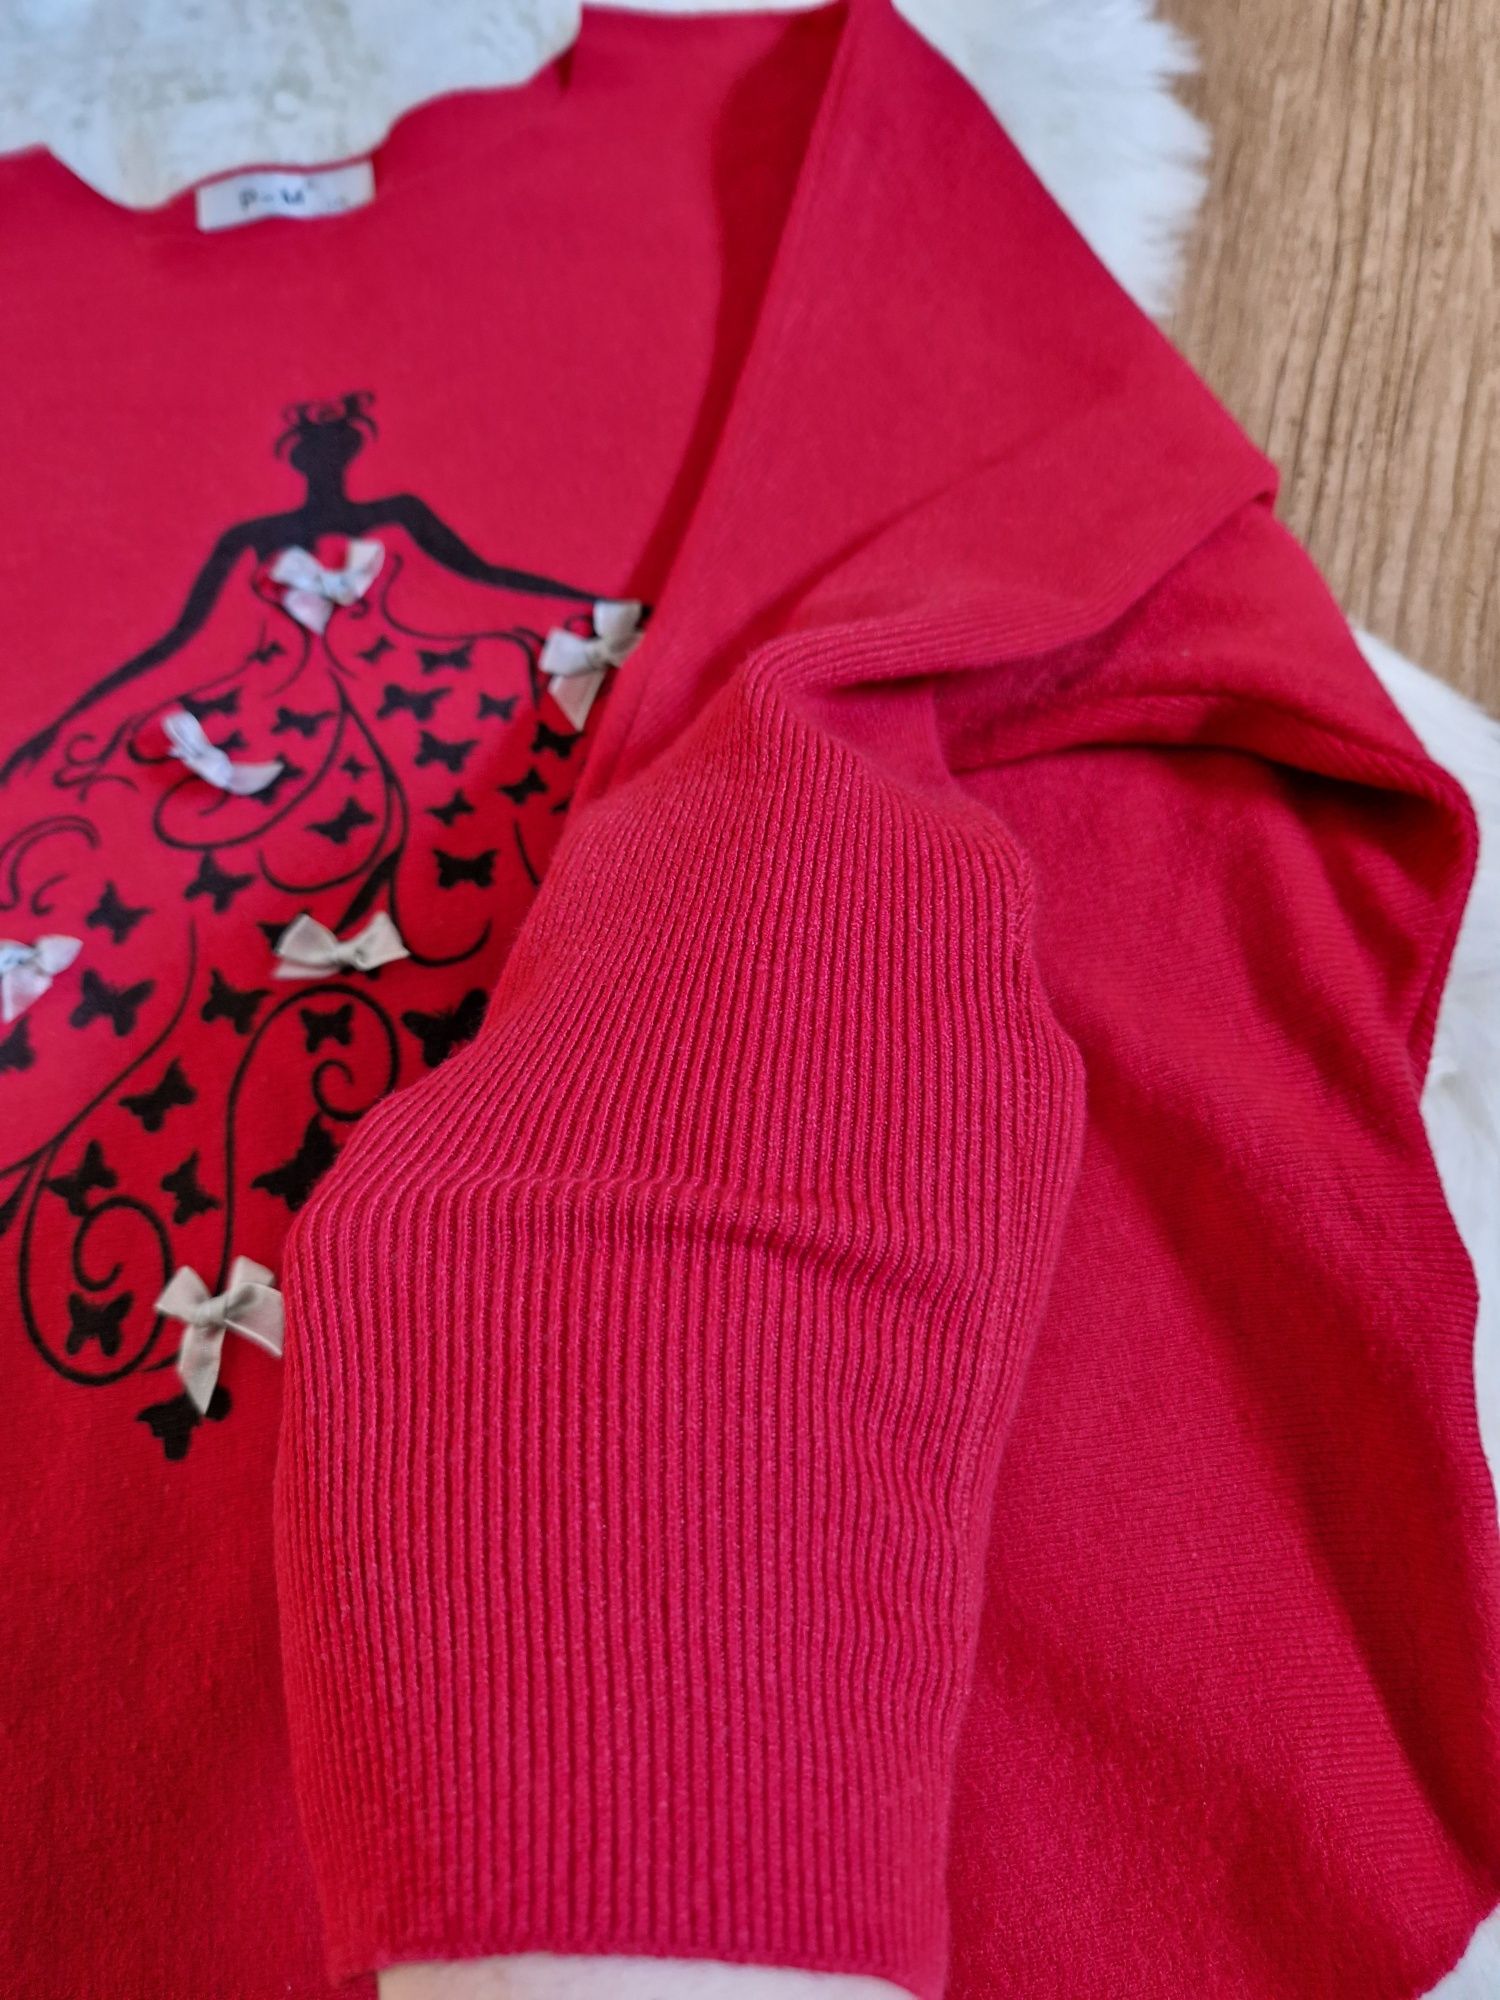 Damska bluzka czerwona kobieca z kokardkami w prążek rozmiar L/XL P-M